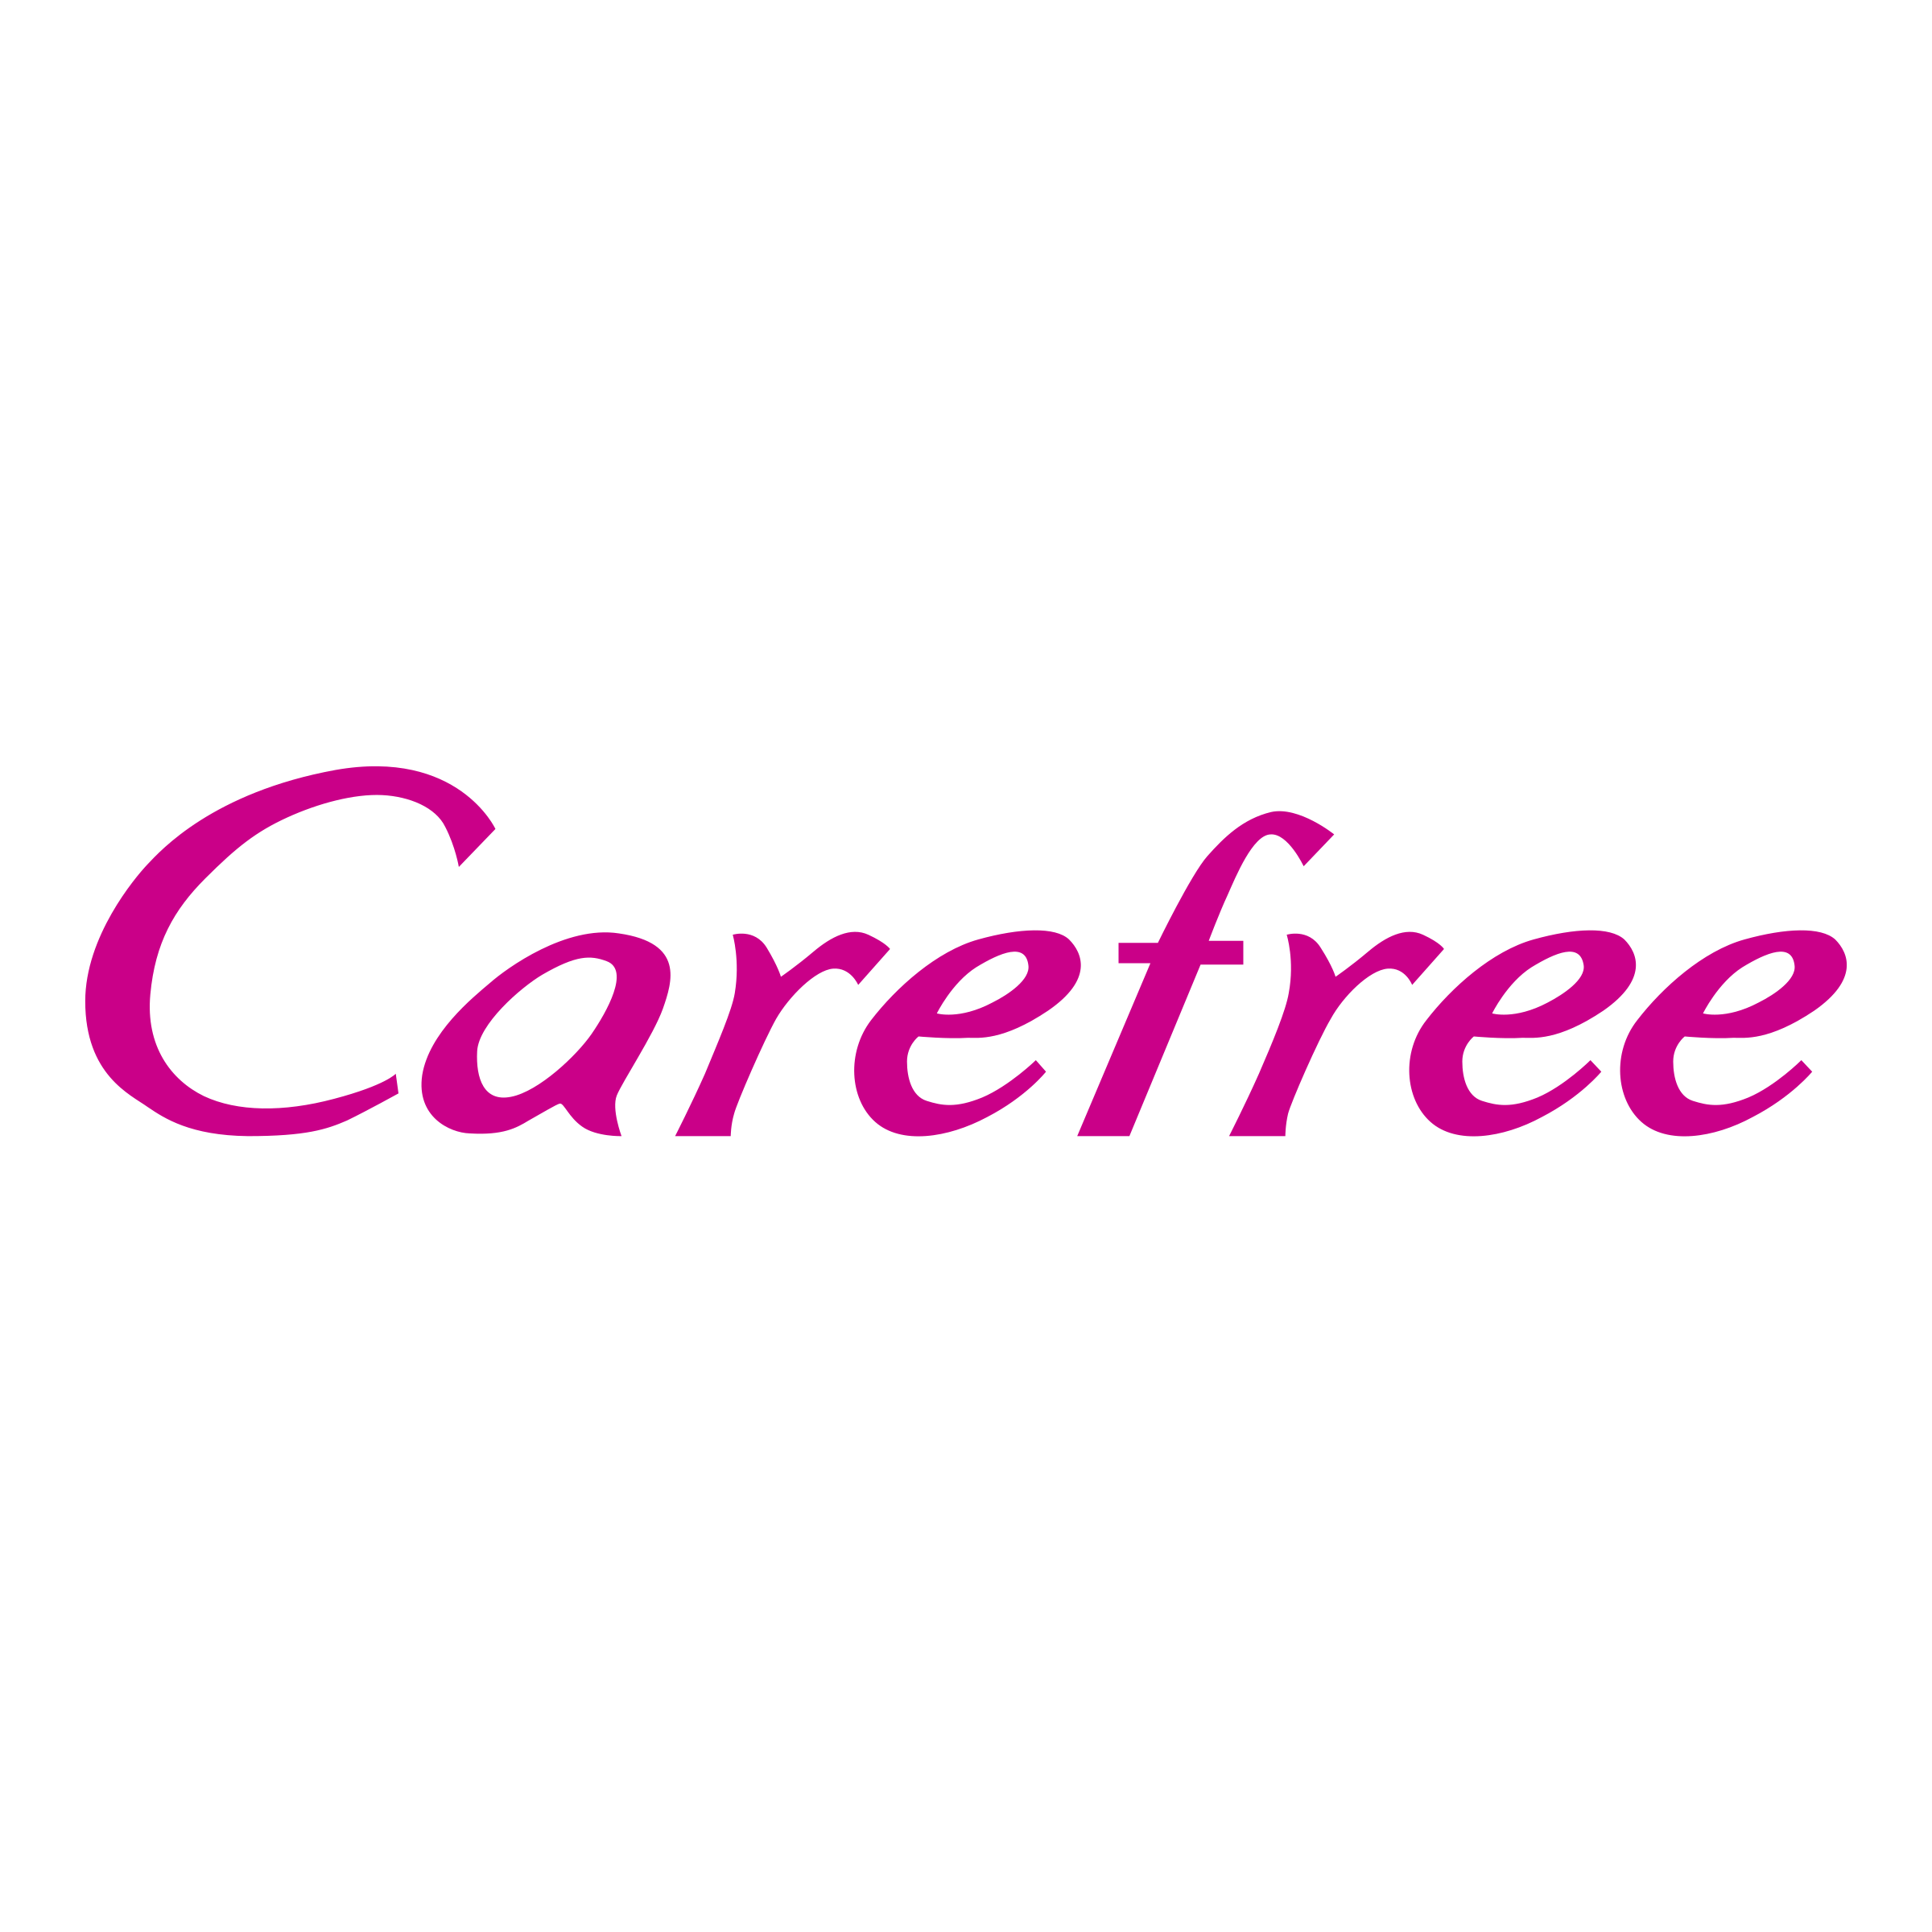 Carefree Logo PNG Transparent & SVG Vector.